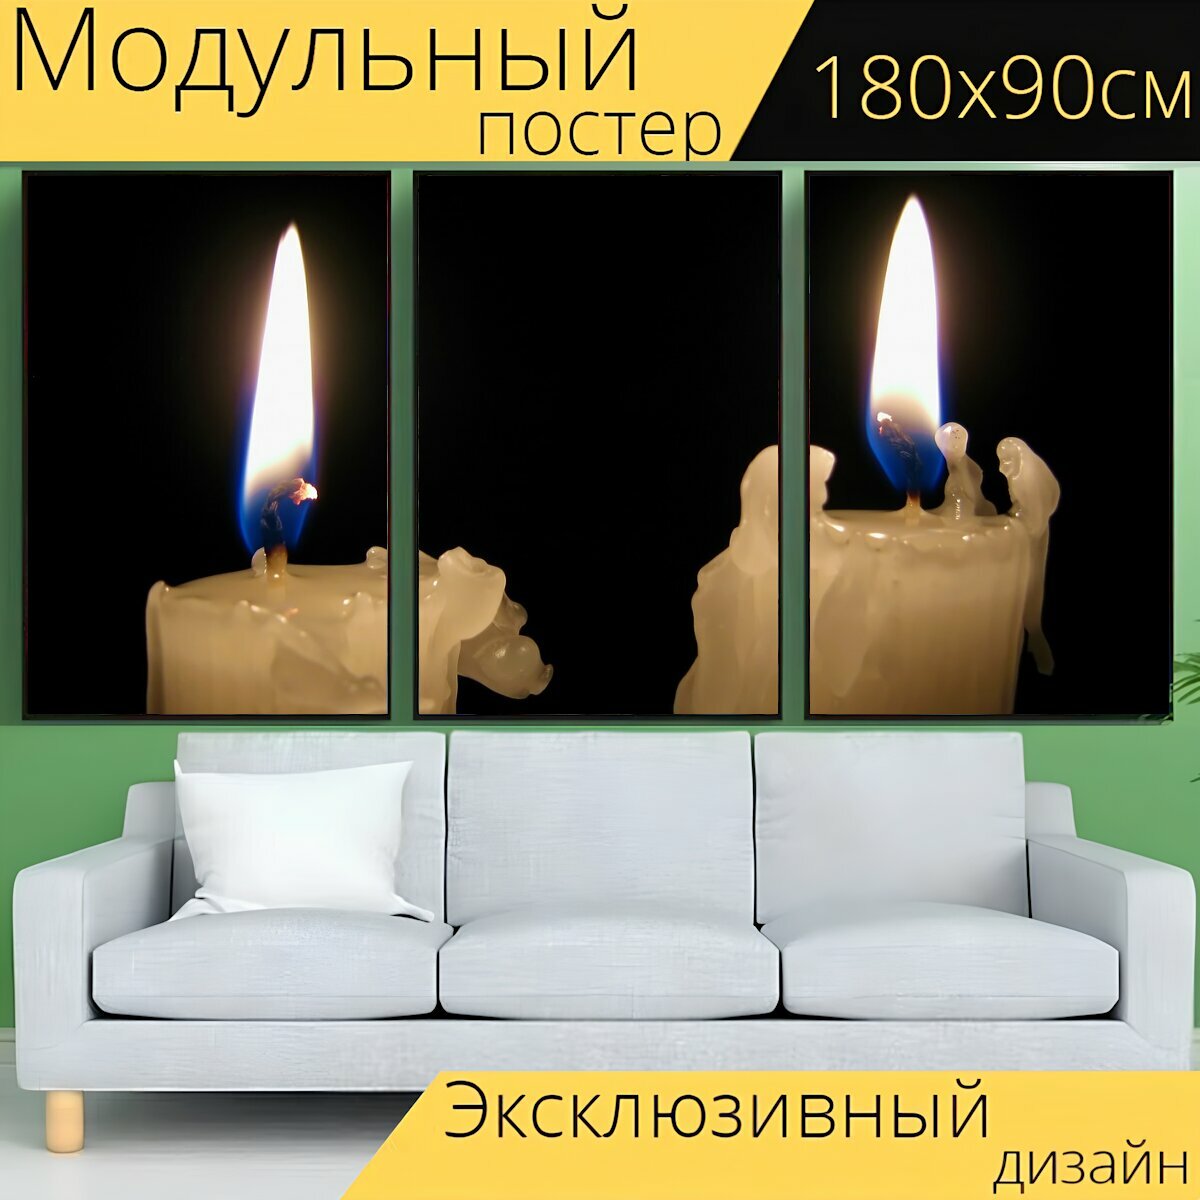 Модульный постер "Свеча, свет, темнота" 180 x 90 см. для интерьера